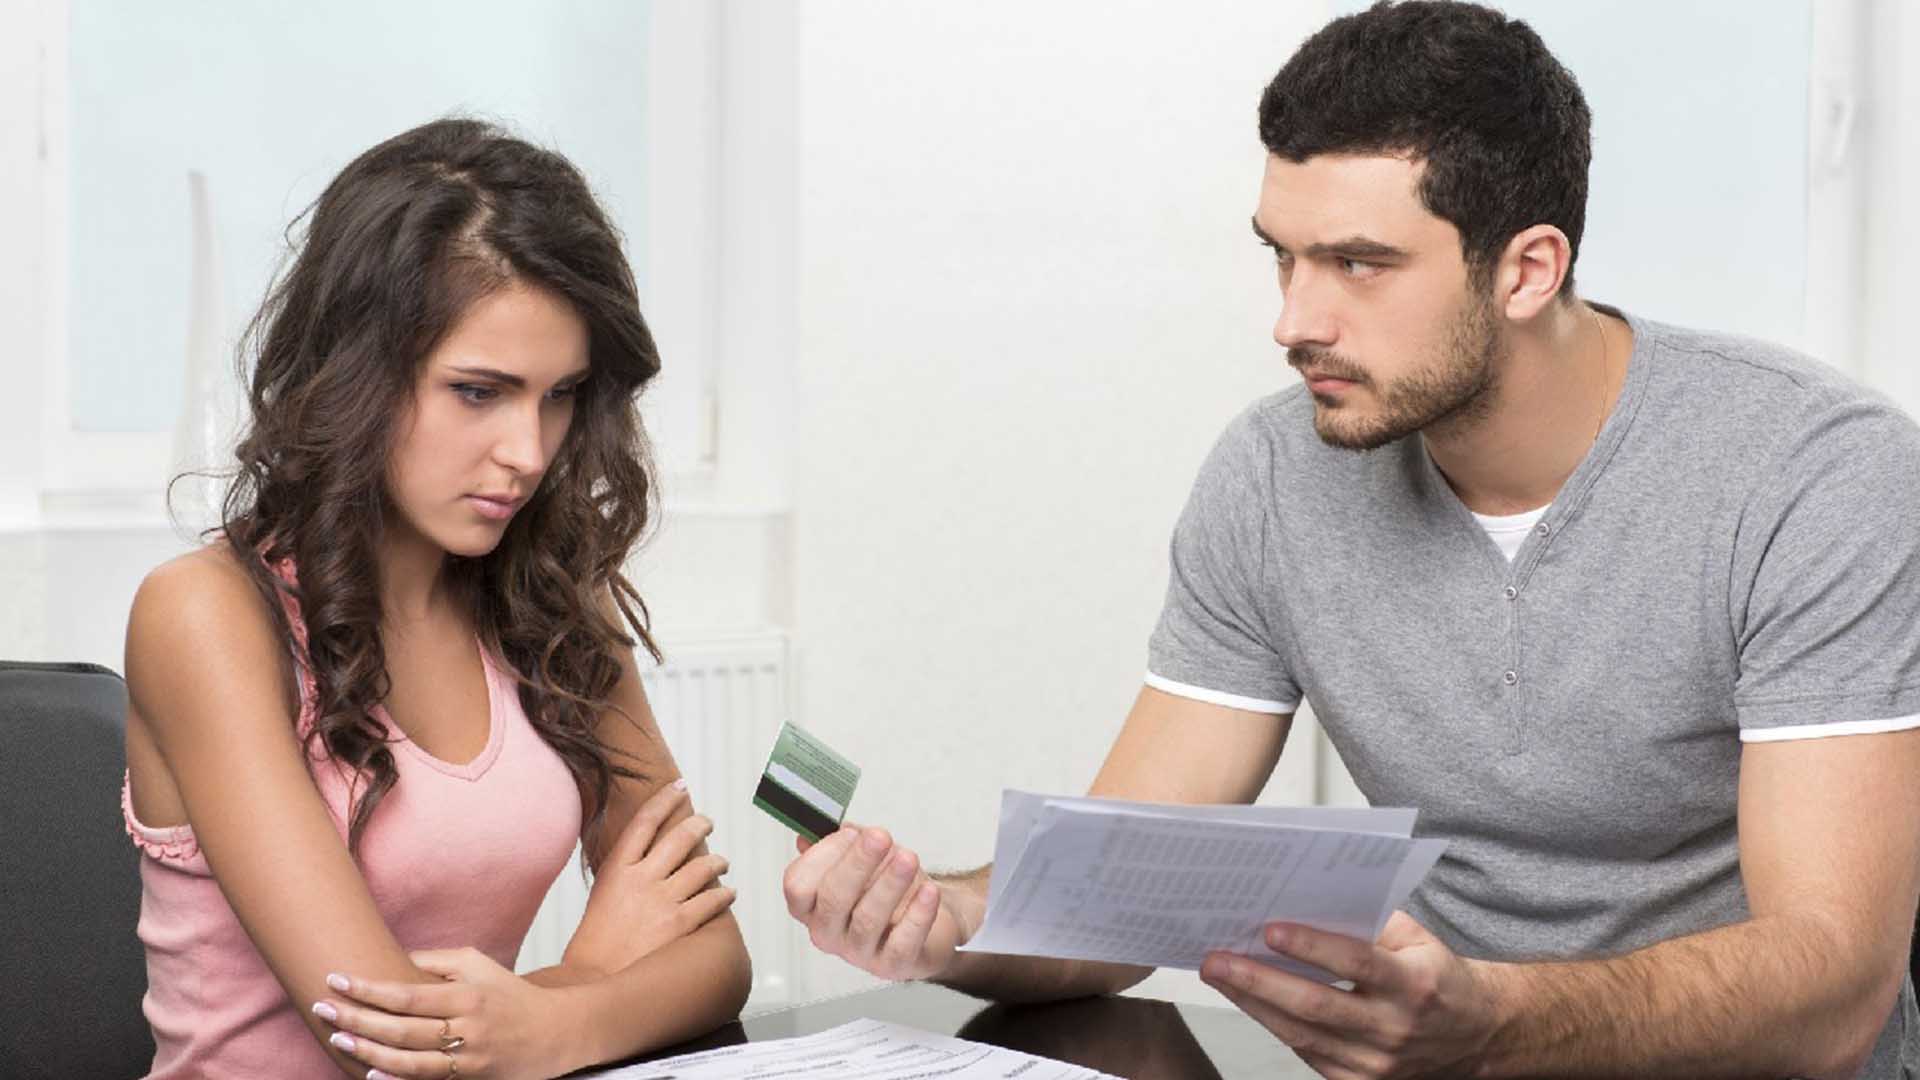 При разводе кредиты мужа делятся. Делить имущество при разводе. Девушка с волосами. Раздел долгов супругов. Муж и жена делят кредит.